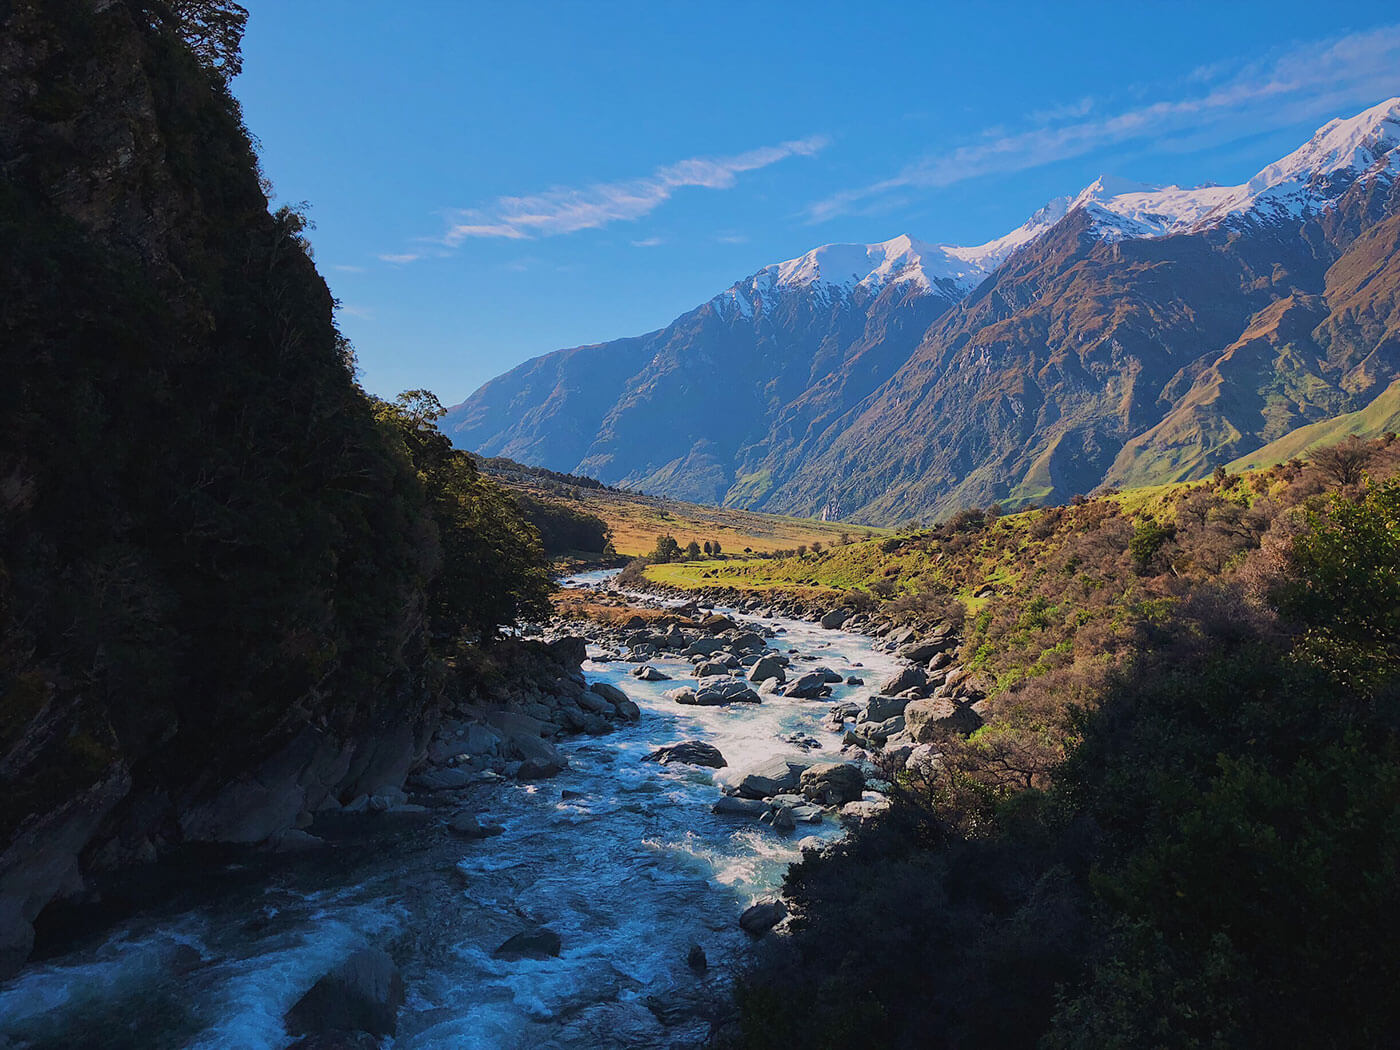 West Matukituki River - 10-Day New Zealand South Island Road Trip Itinerary